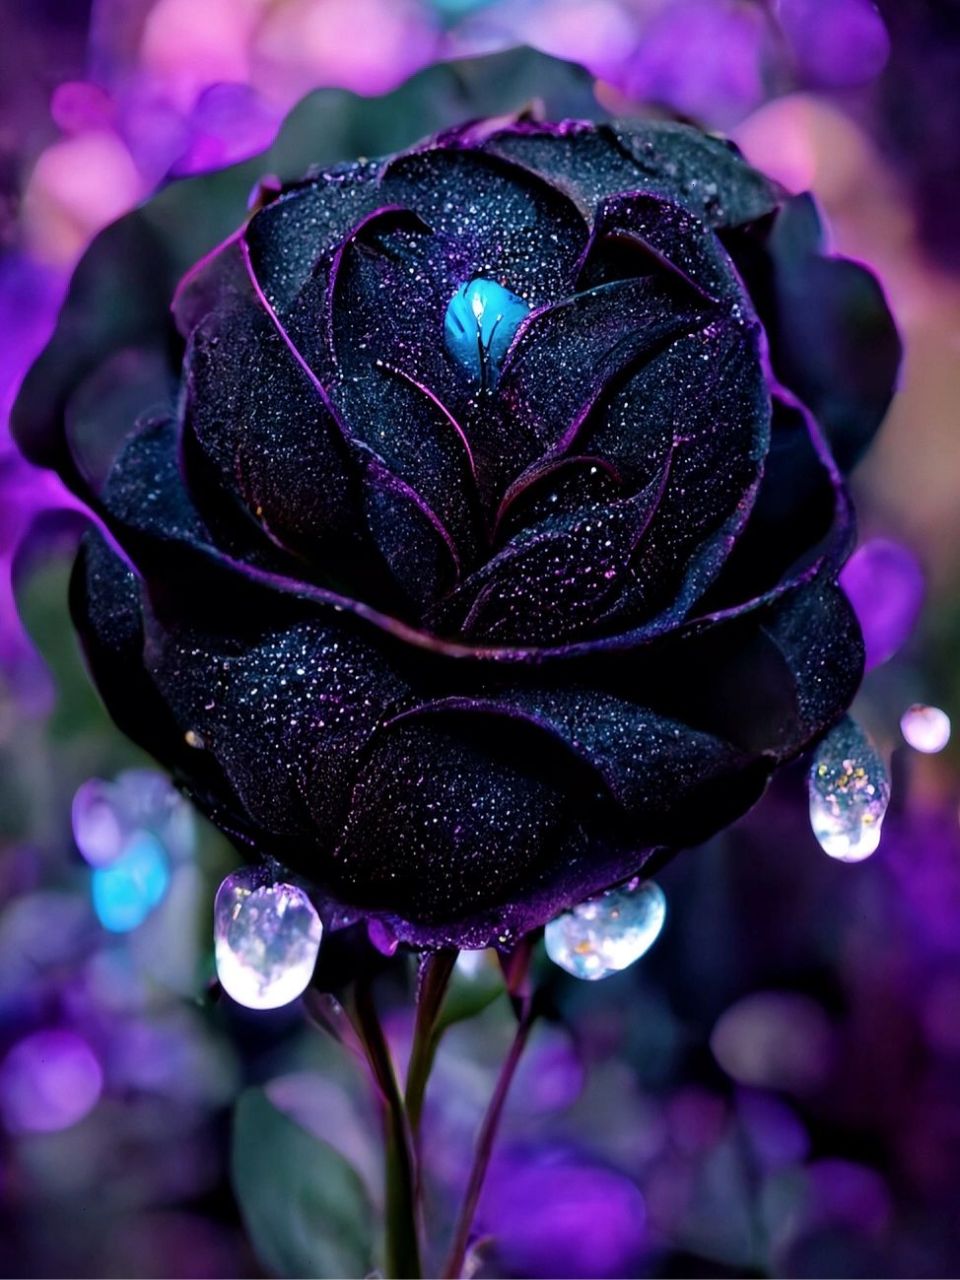 黑巴克玫瑰 有一种花叫黑巴克玫瑰,它的花语是:温柔真心,独一无二!